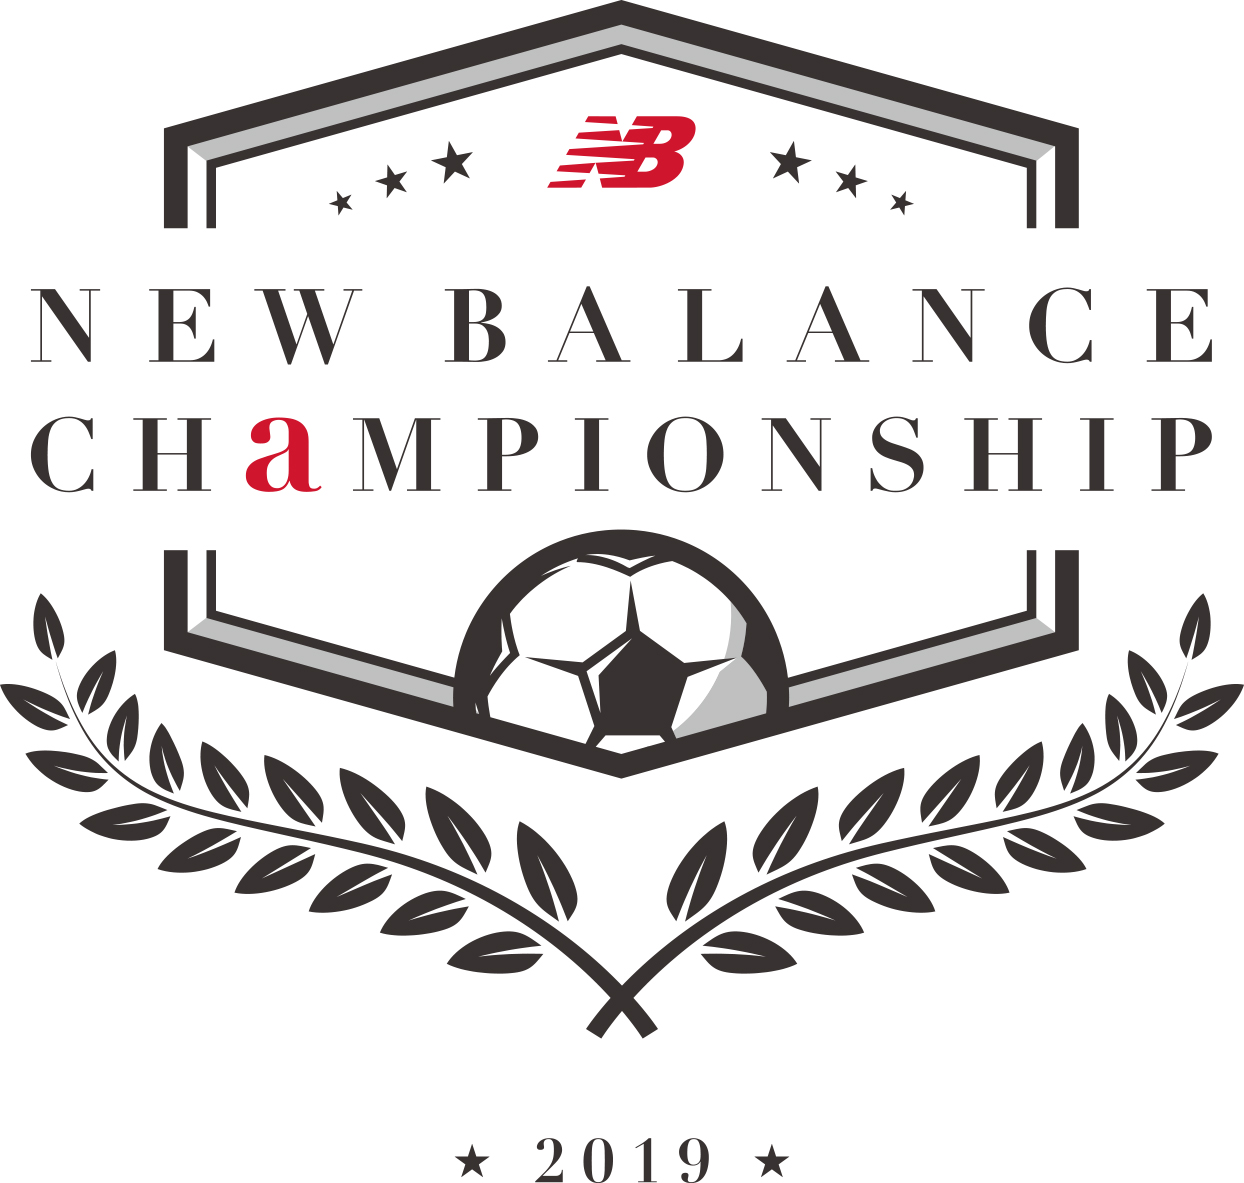 ニューバランス フットボール キミたちは 世界 を変えられる ニューバランスチャンピオンシップ 19 開催 株式会社ニューバランス ジャパンのプレスリリース